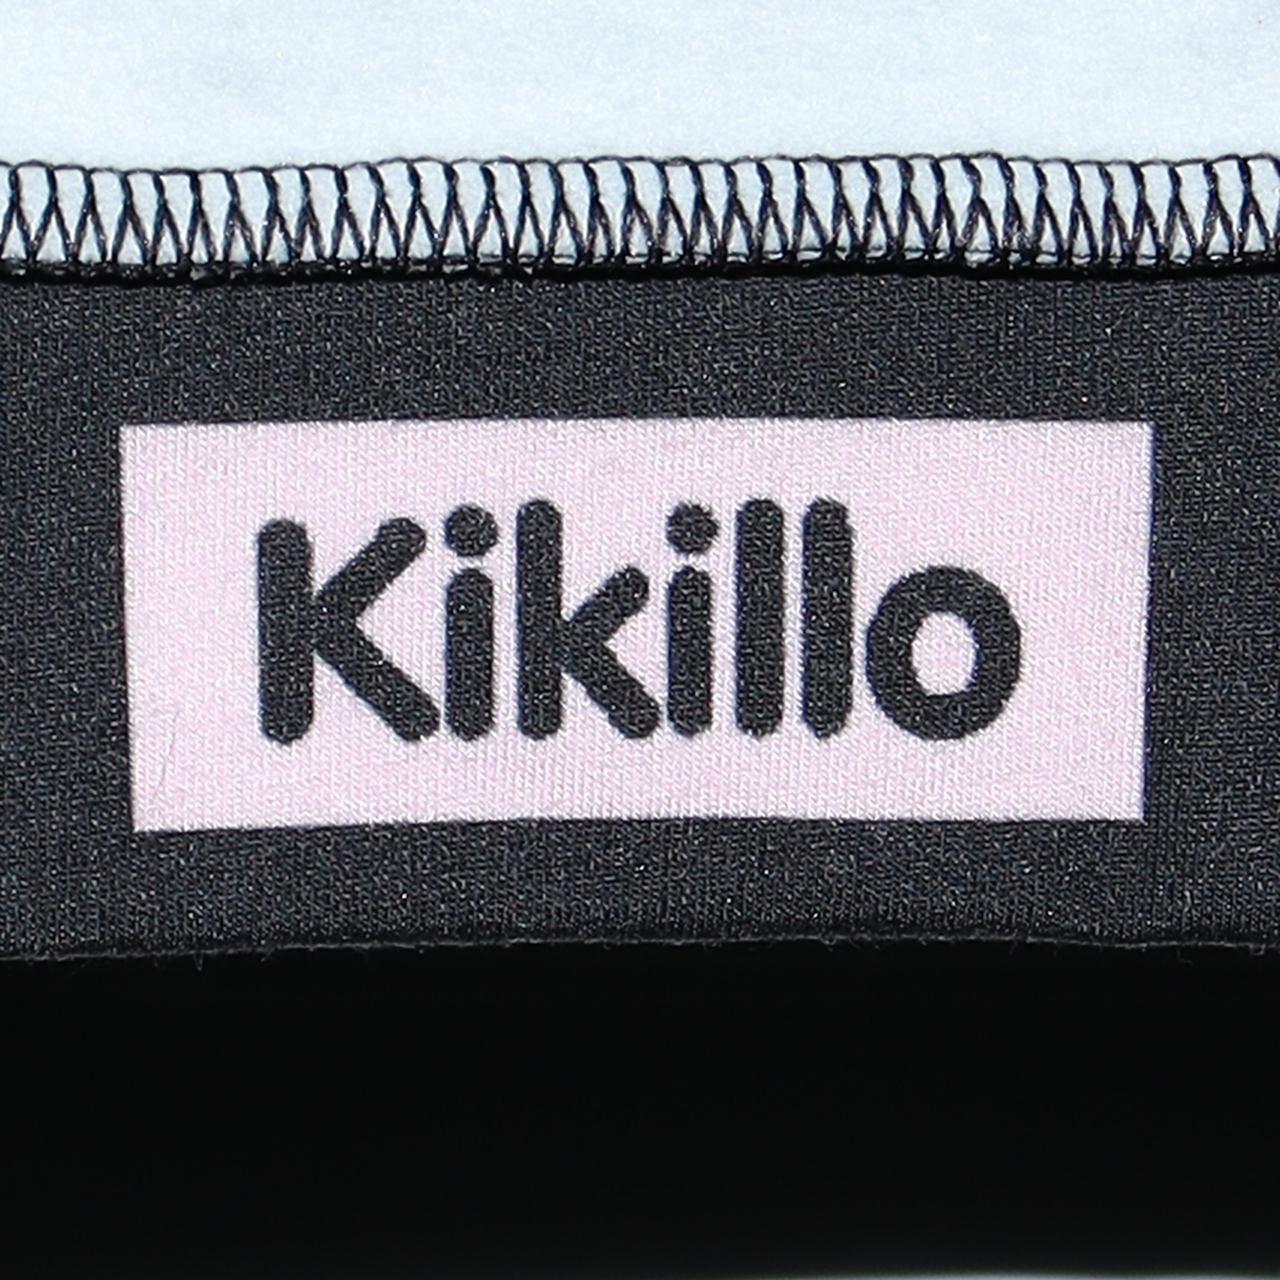 Product Image 4 - Kikillo Oversized Terminator Anime Sweater

Oversized